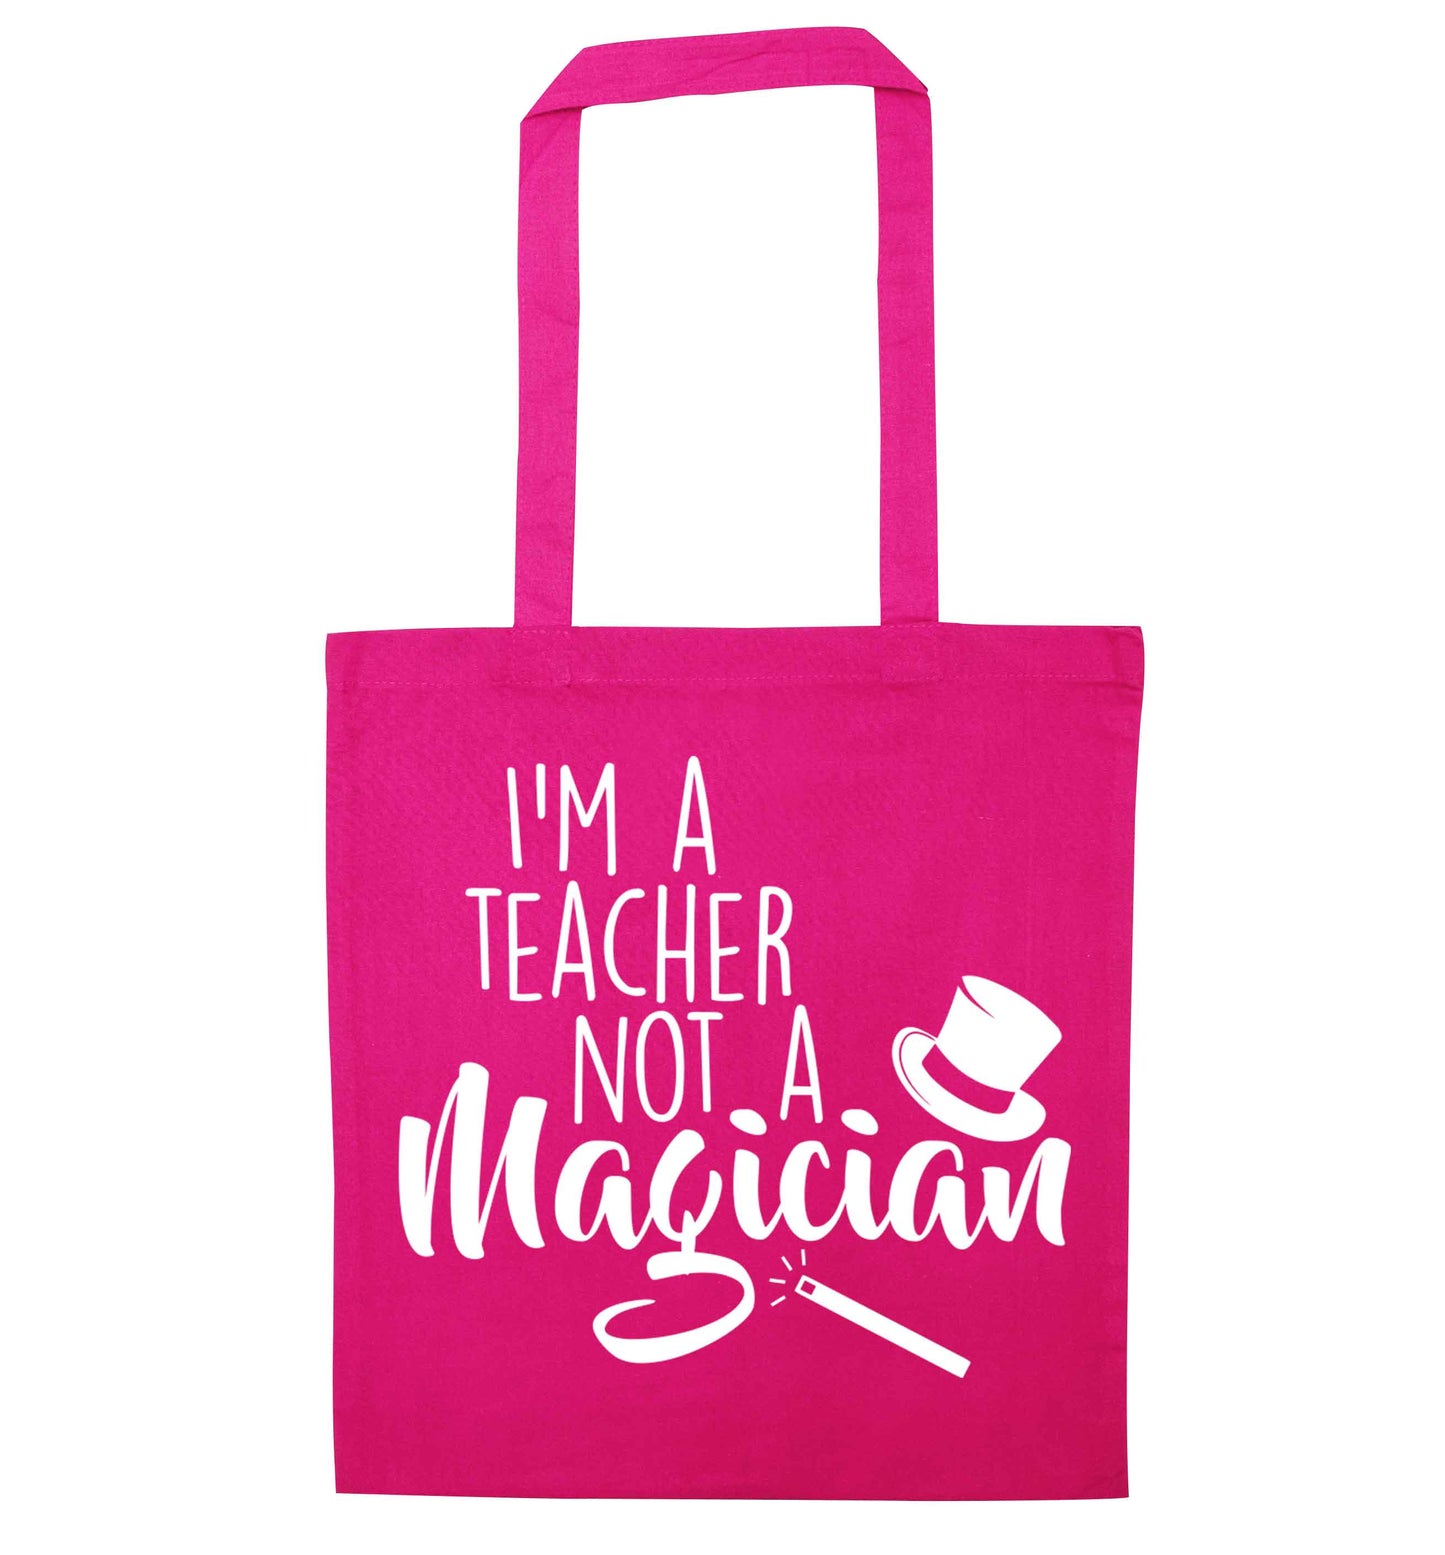 I'm a teacher not a magician pink tote bag